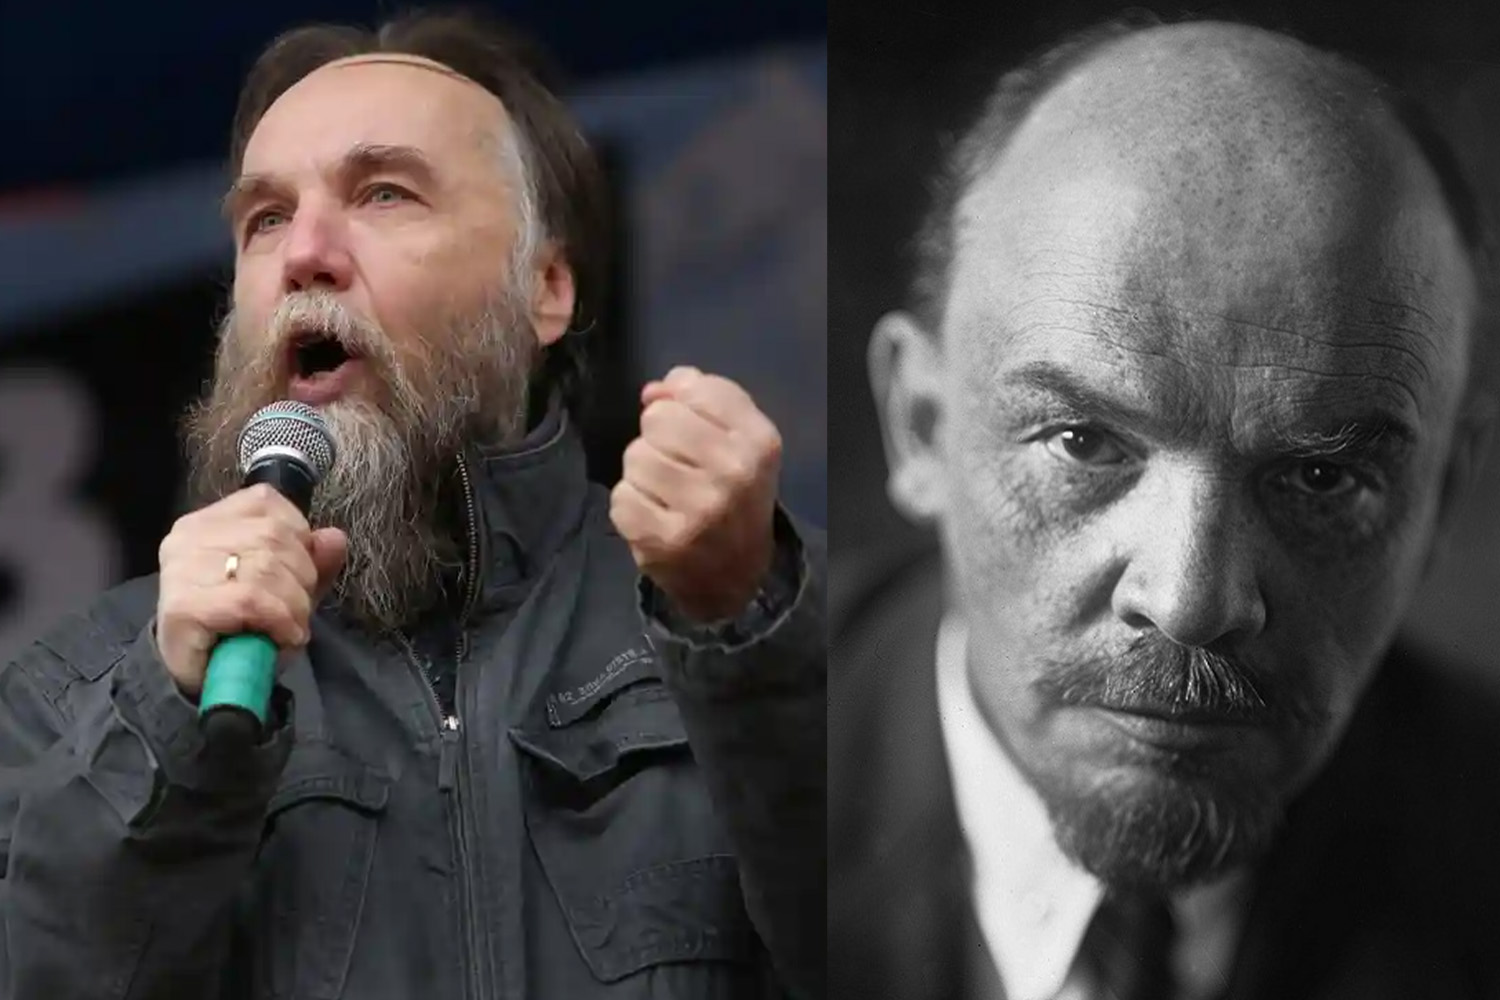 Russische filosofen Ivan Ilyin (1883-1954) en Alexander Dugin